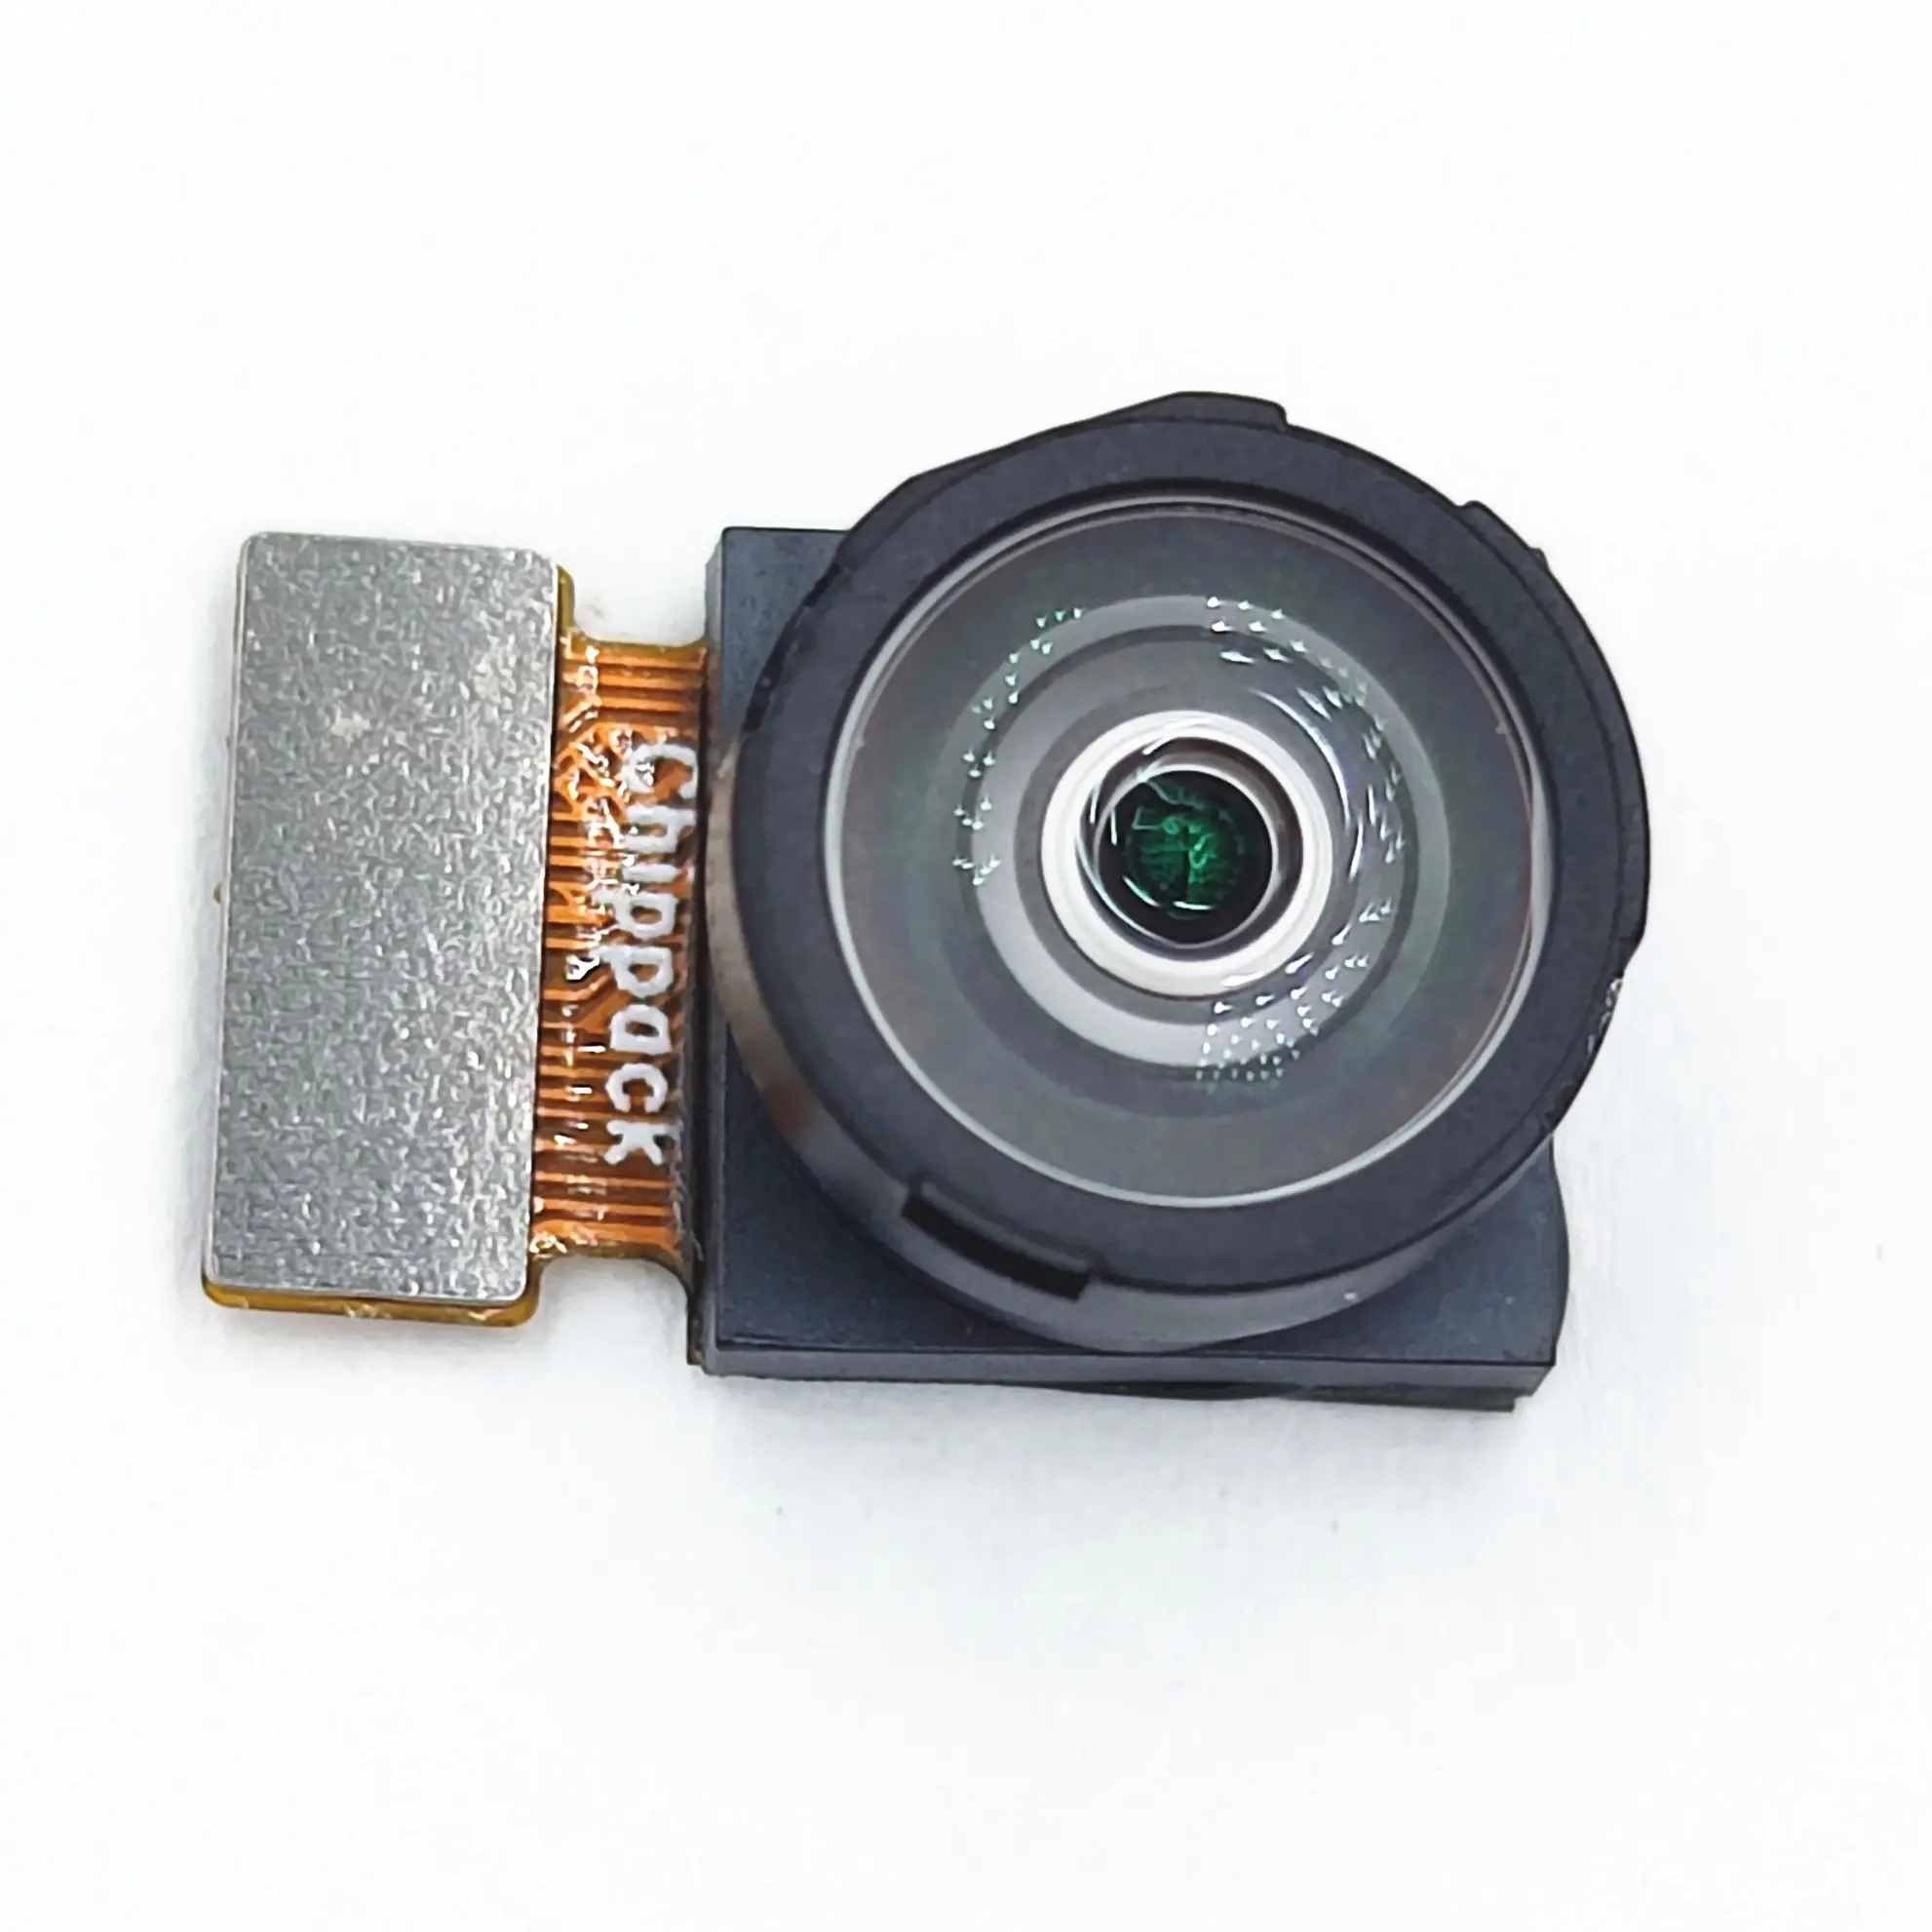 ST Global Shutter 1.5Mp VD56G3は、ピクセルサイズ2.61の広角152度小型カメラモジュールを備えたイメージセンサーです。